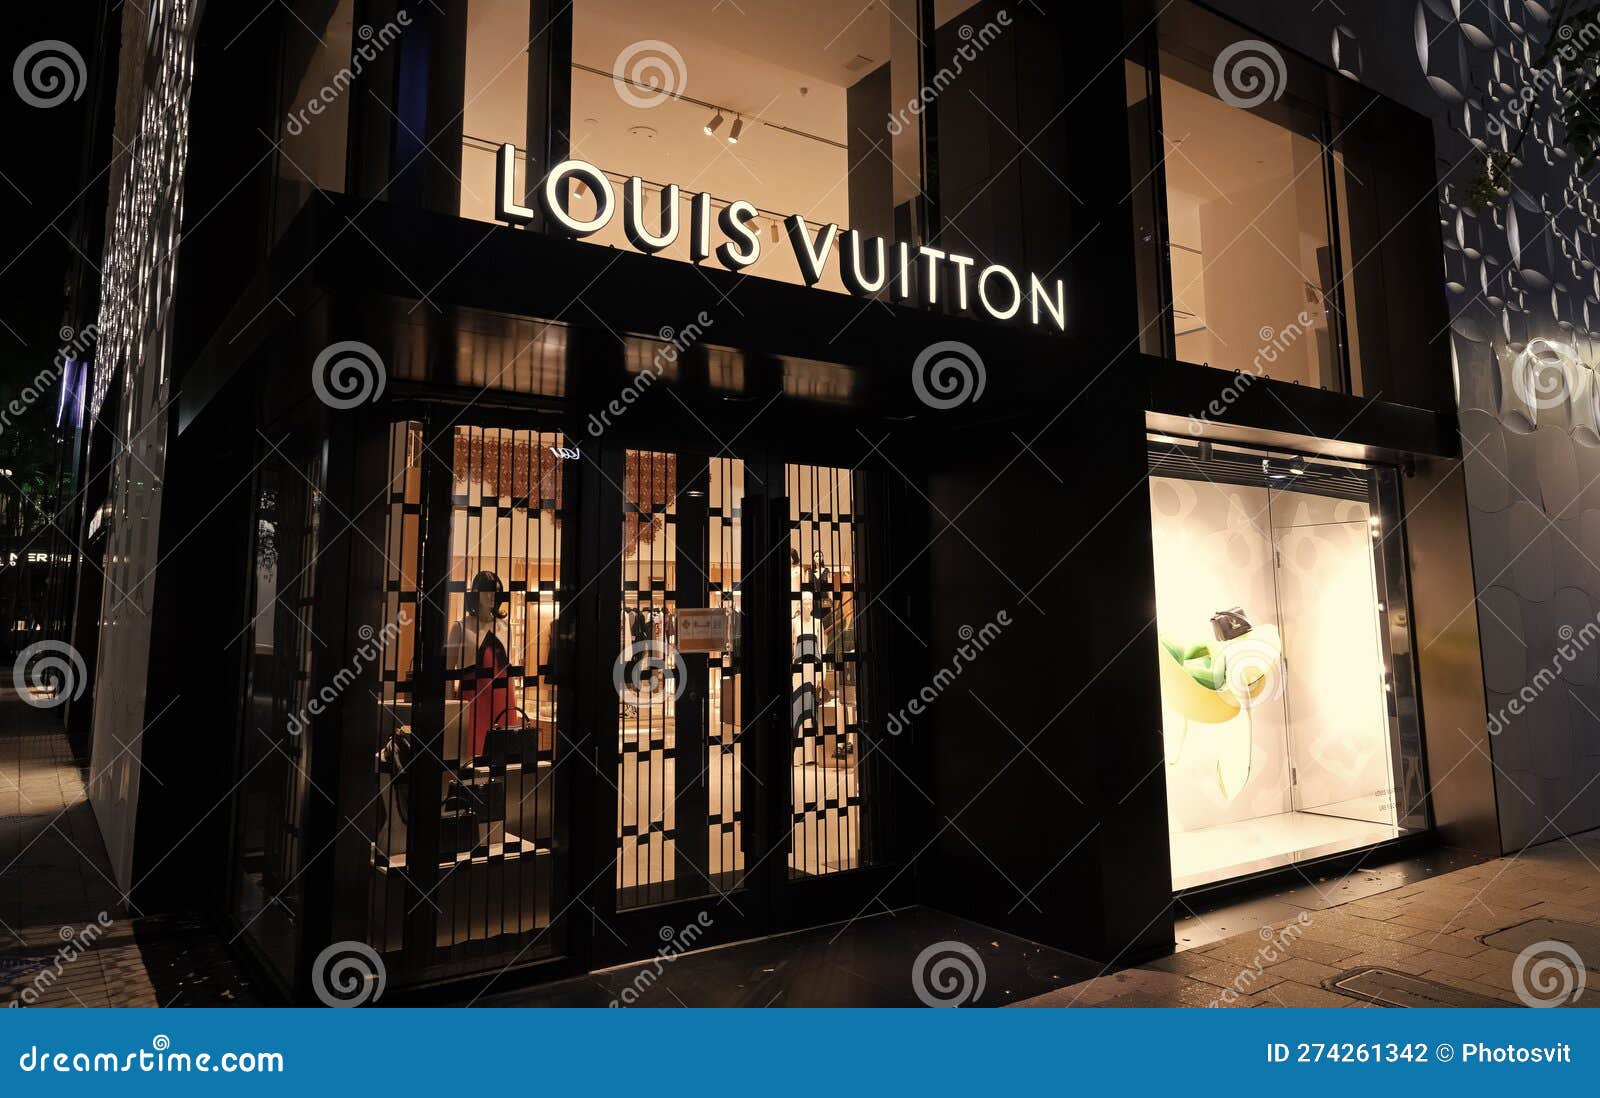 Louis Vuitton Wynwood Miami Florida